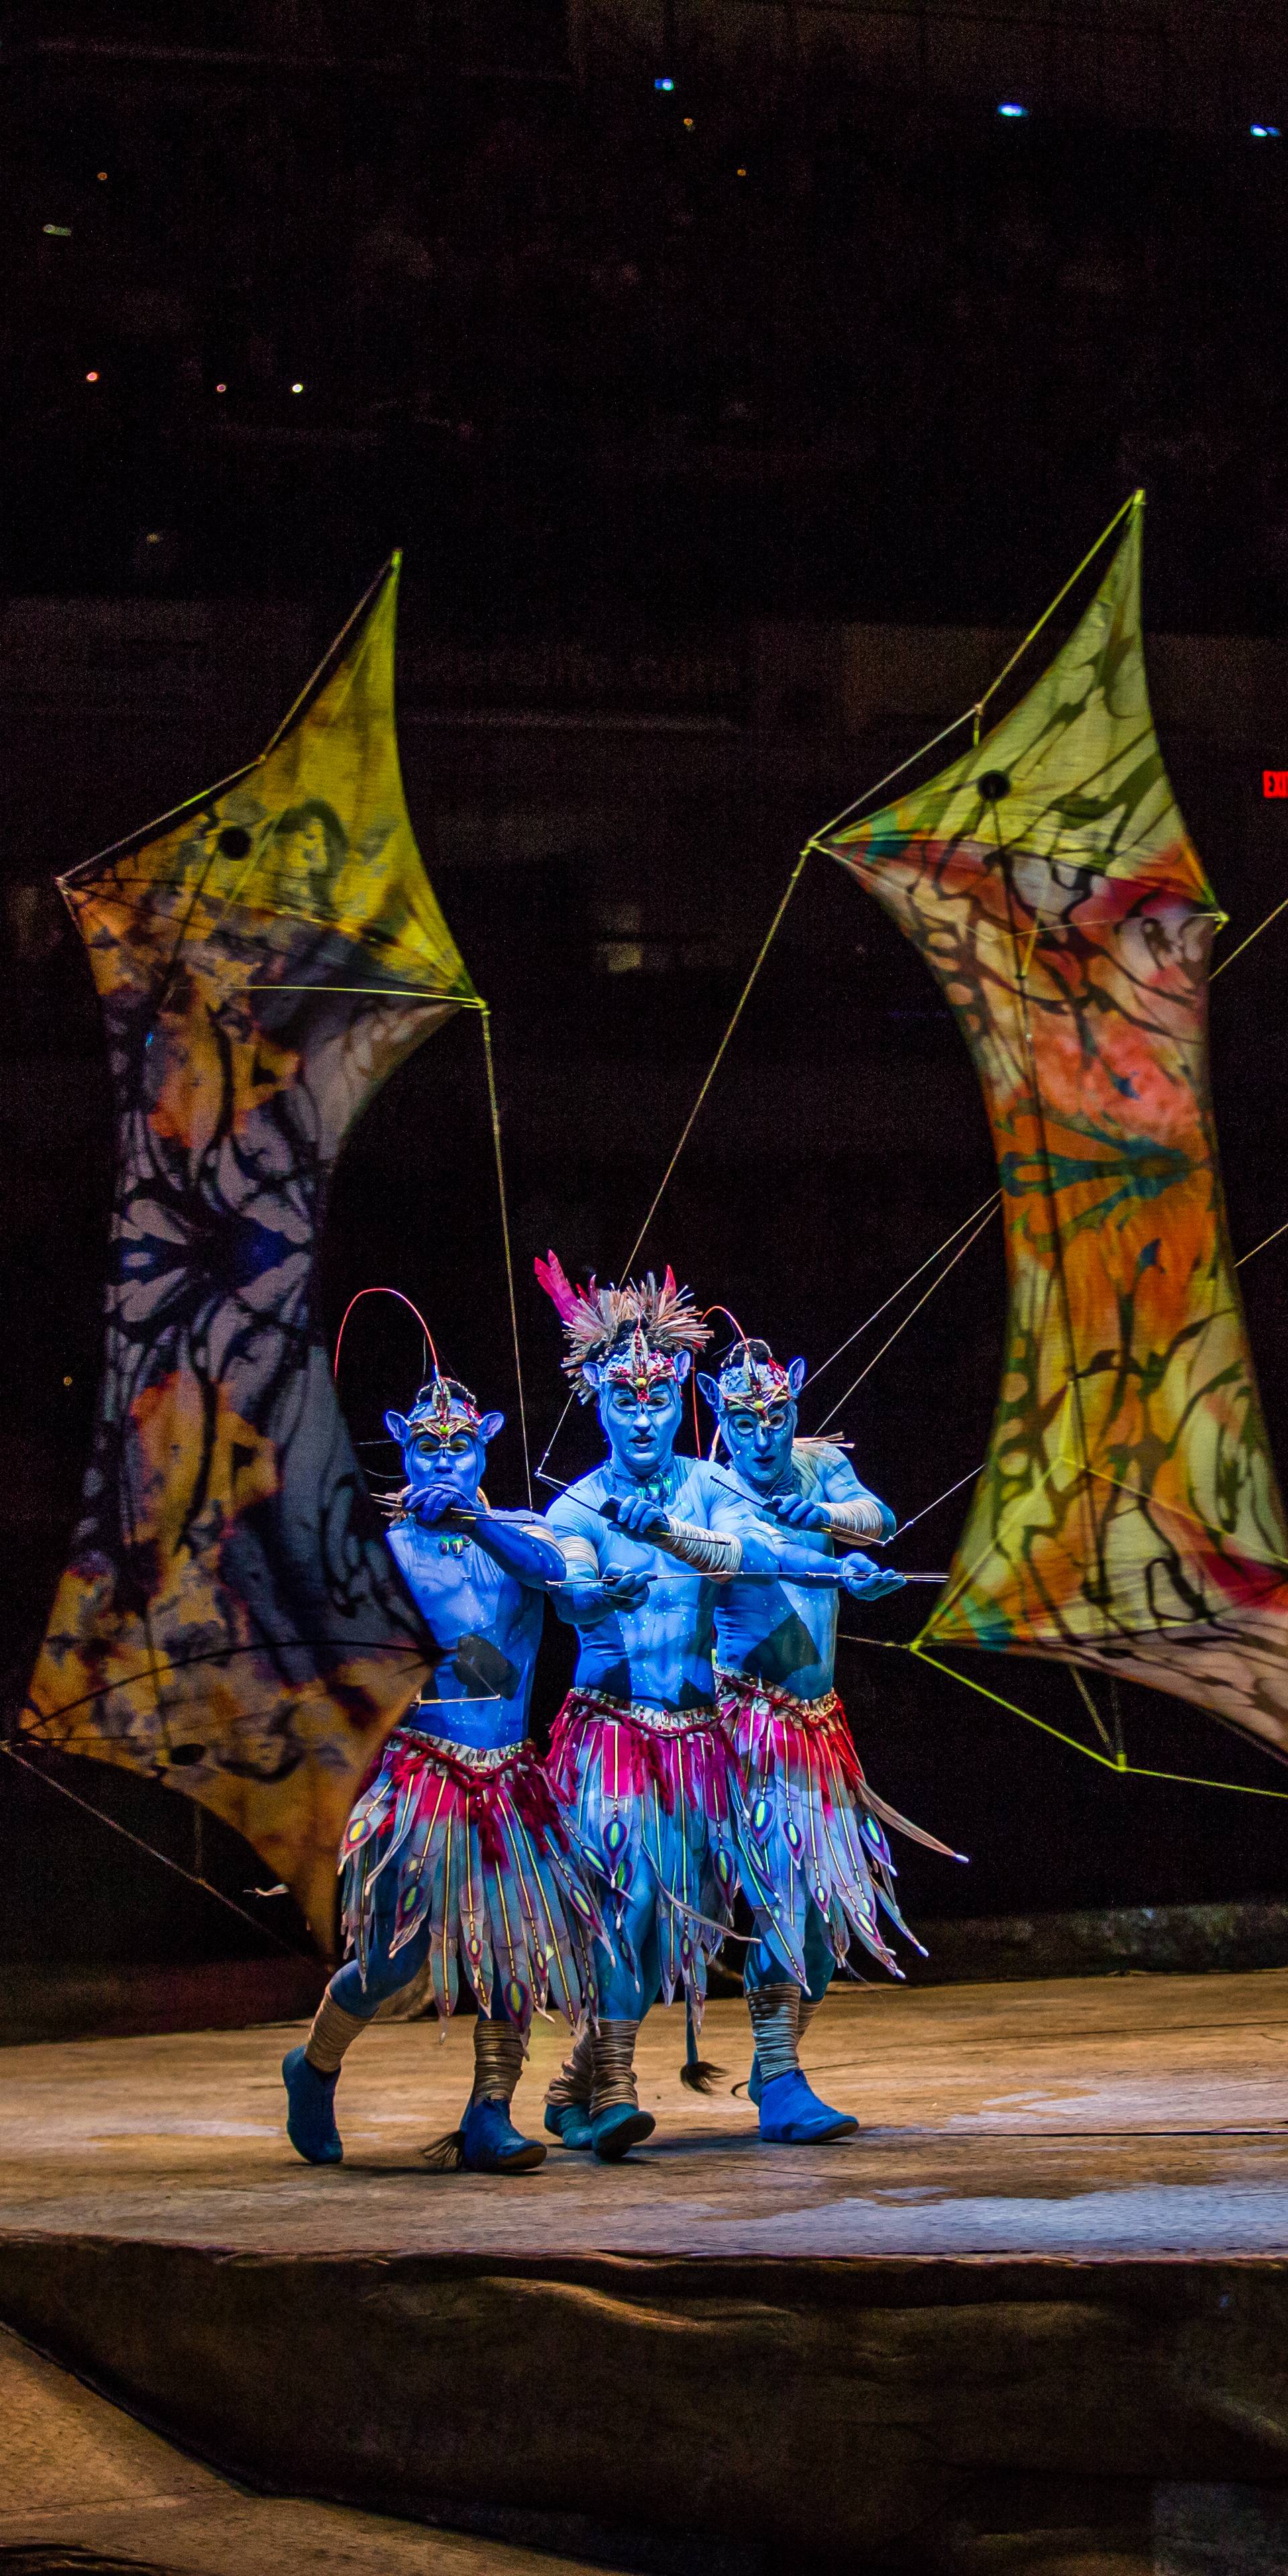 Cirque du Soleil u Zagrebu: Za opremu su im trebala 4 aviona